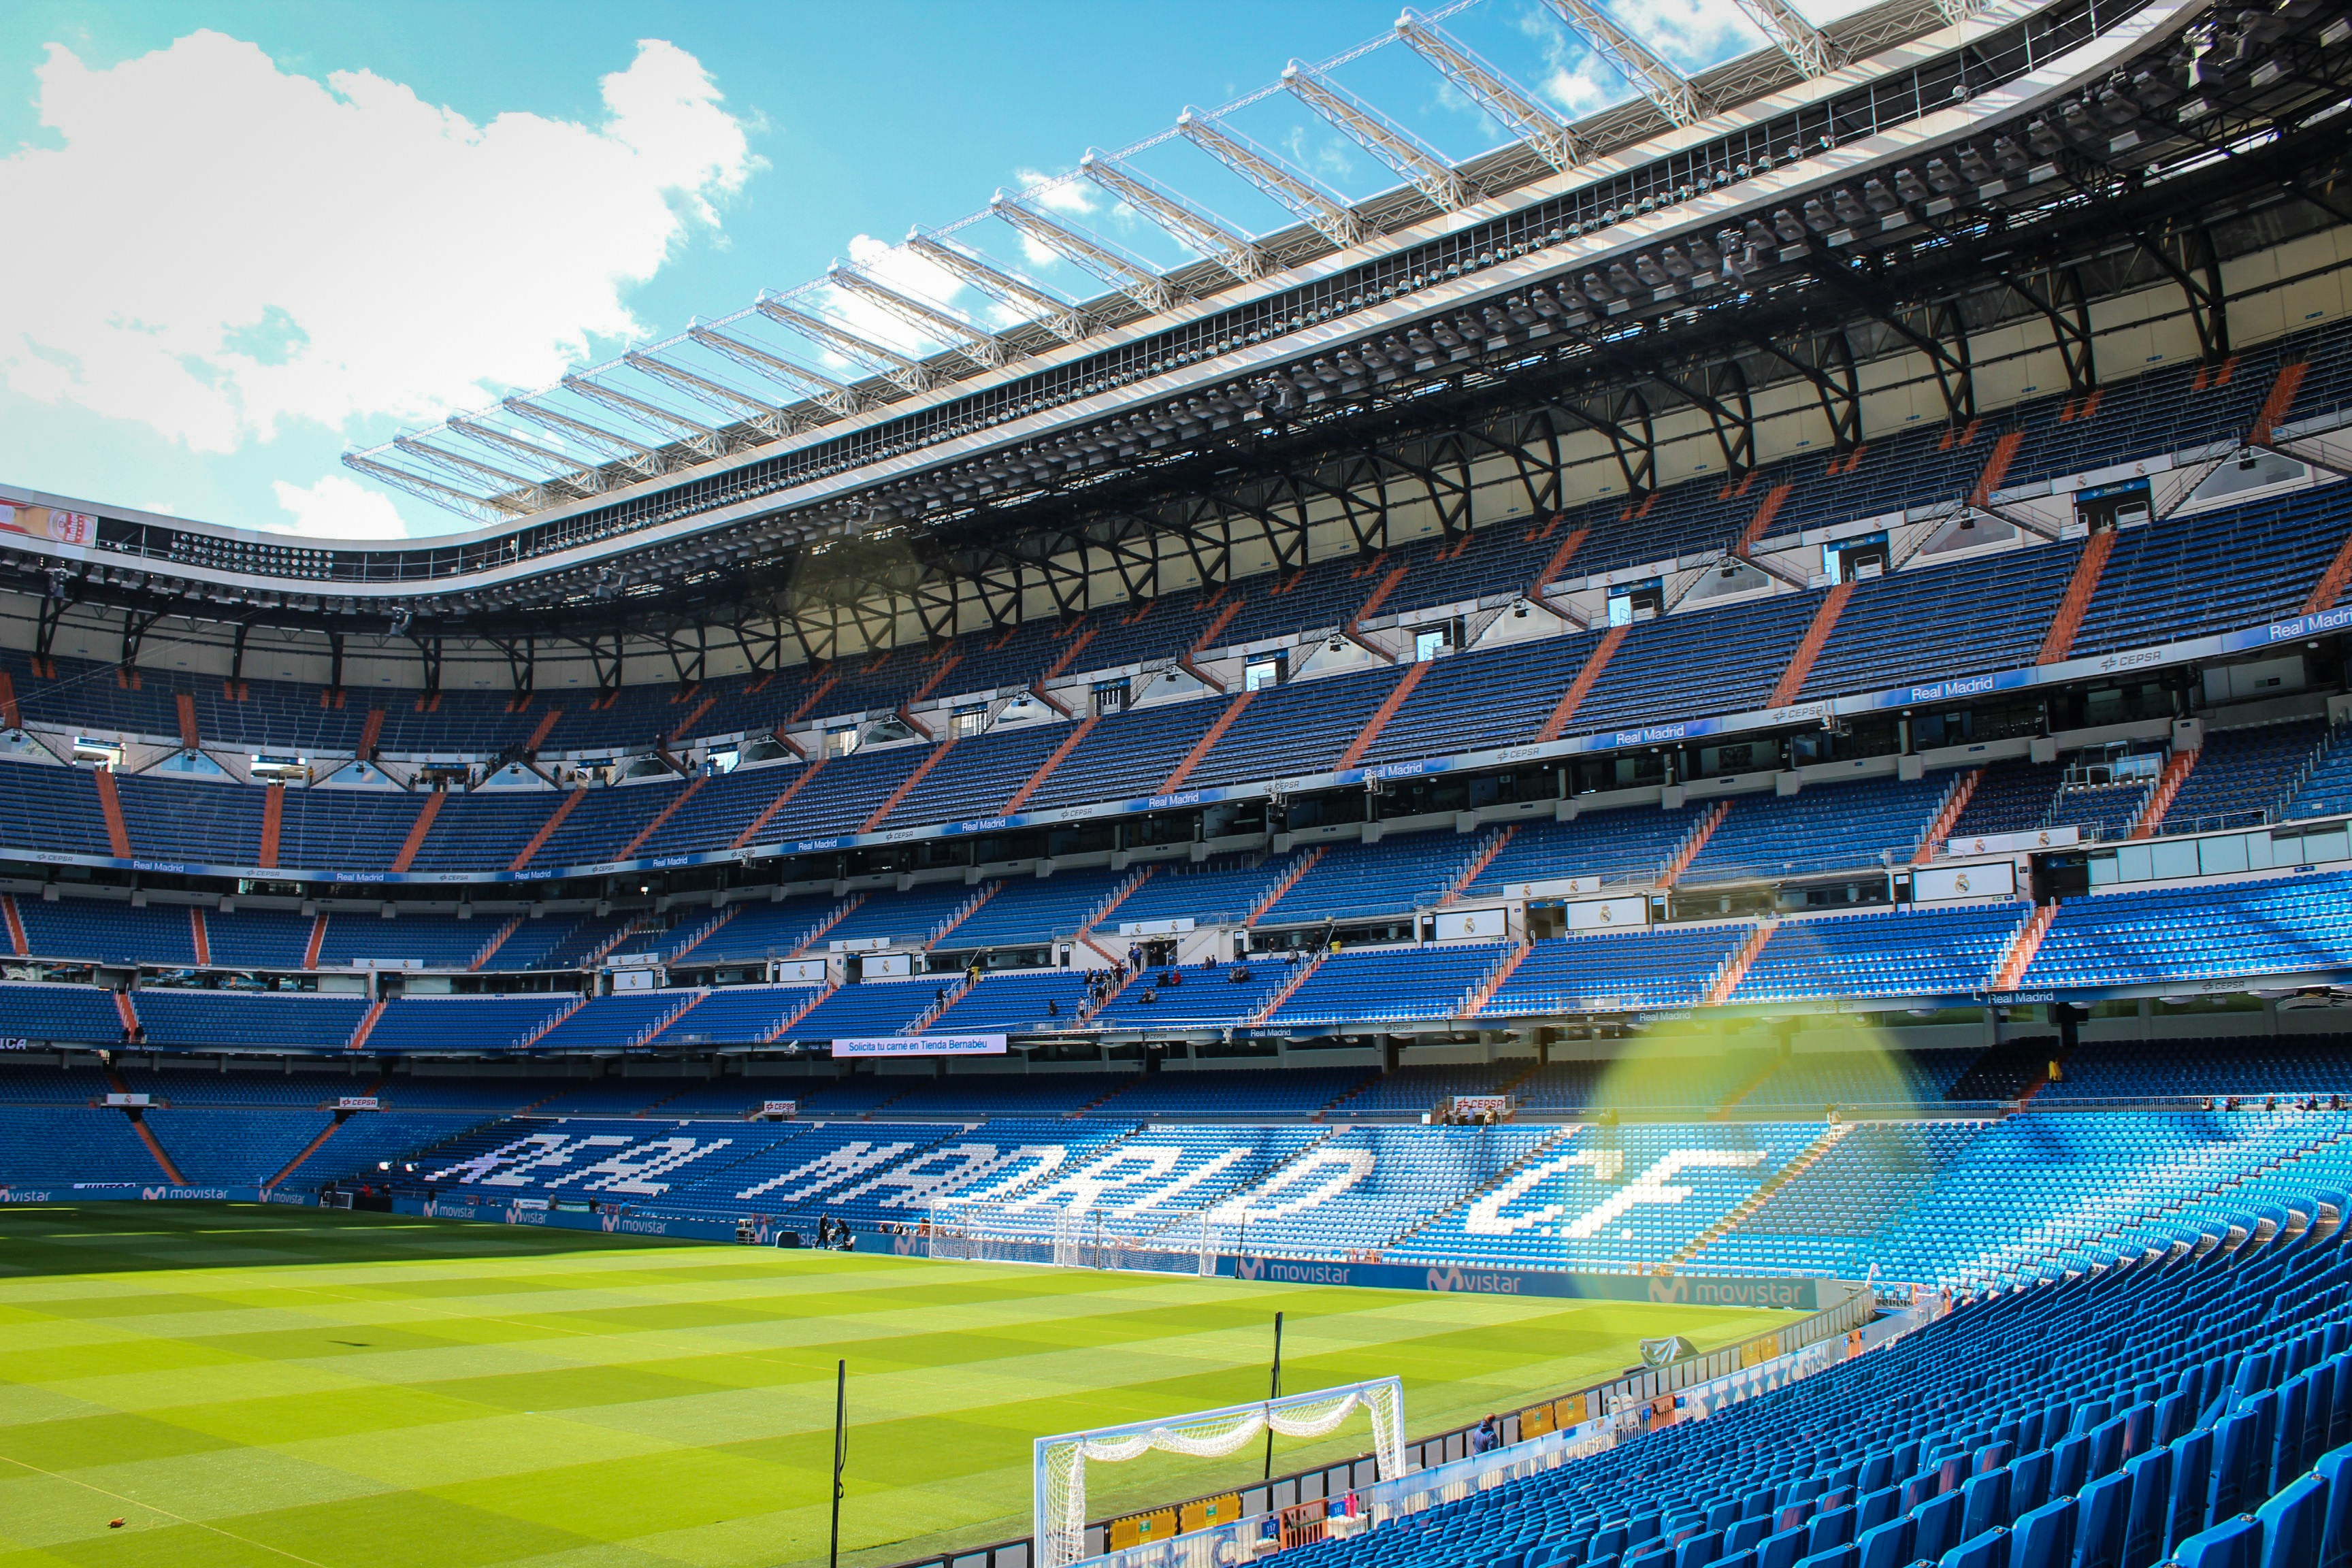 Real Madrid CF stadium